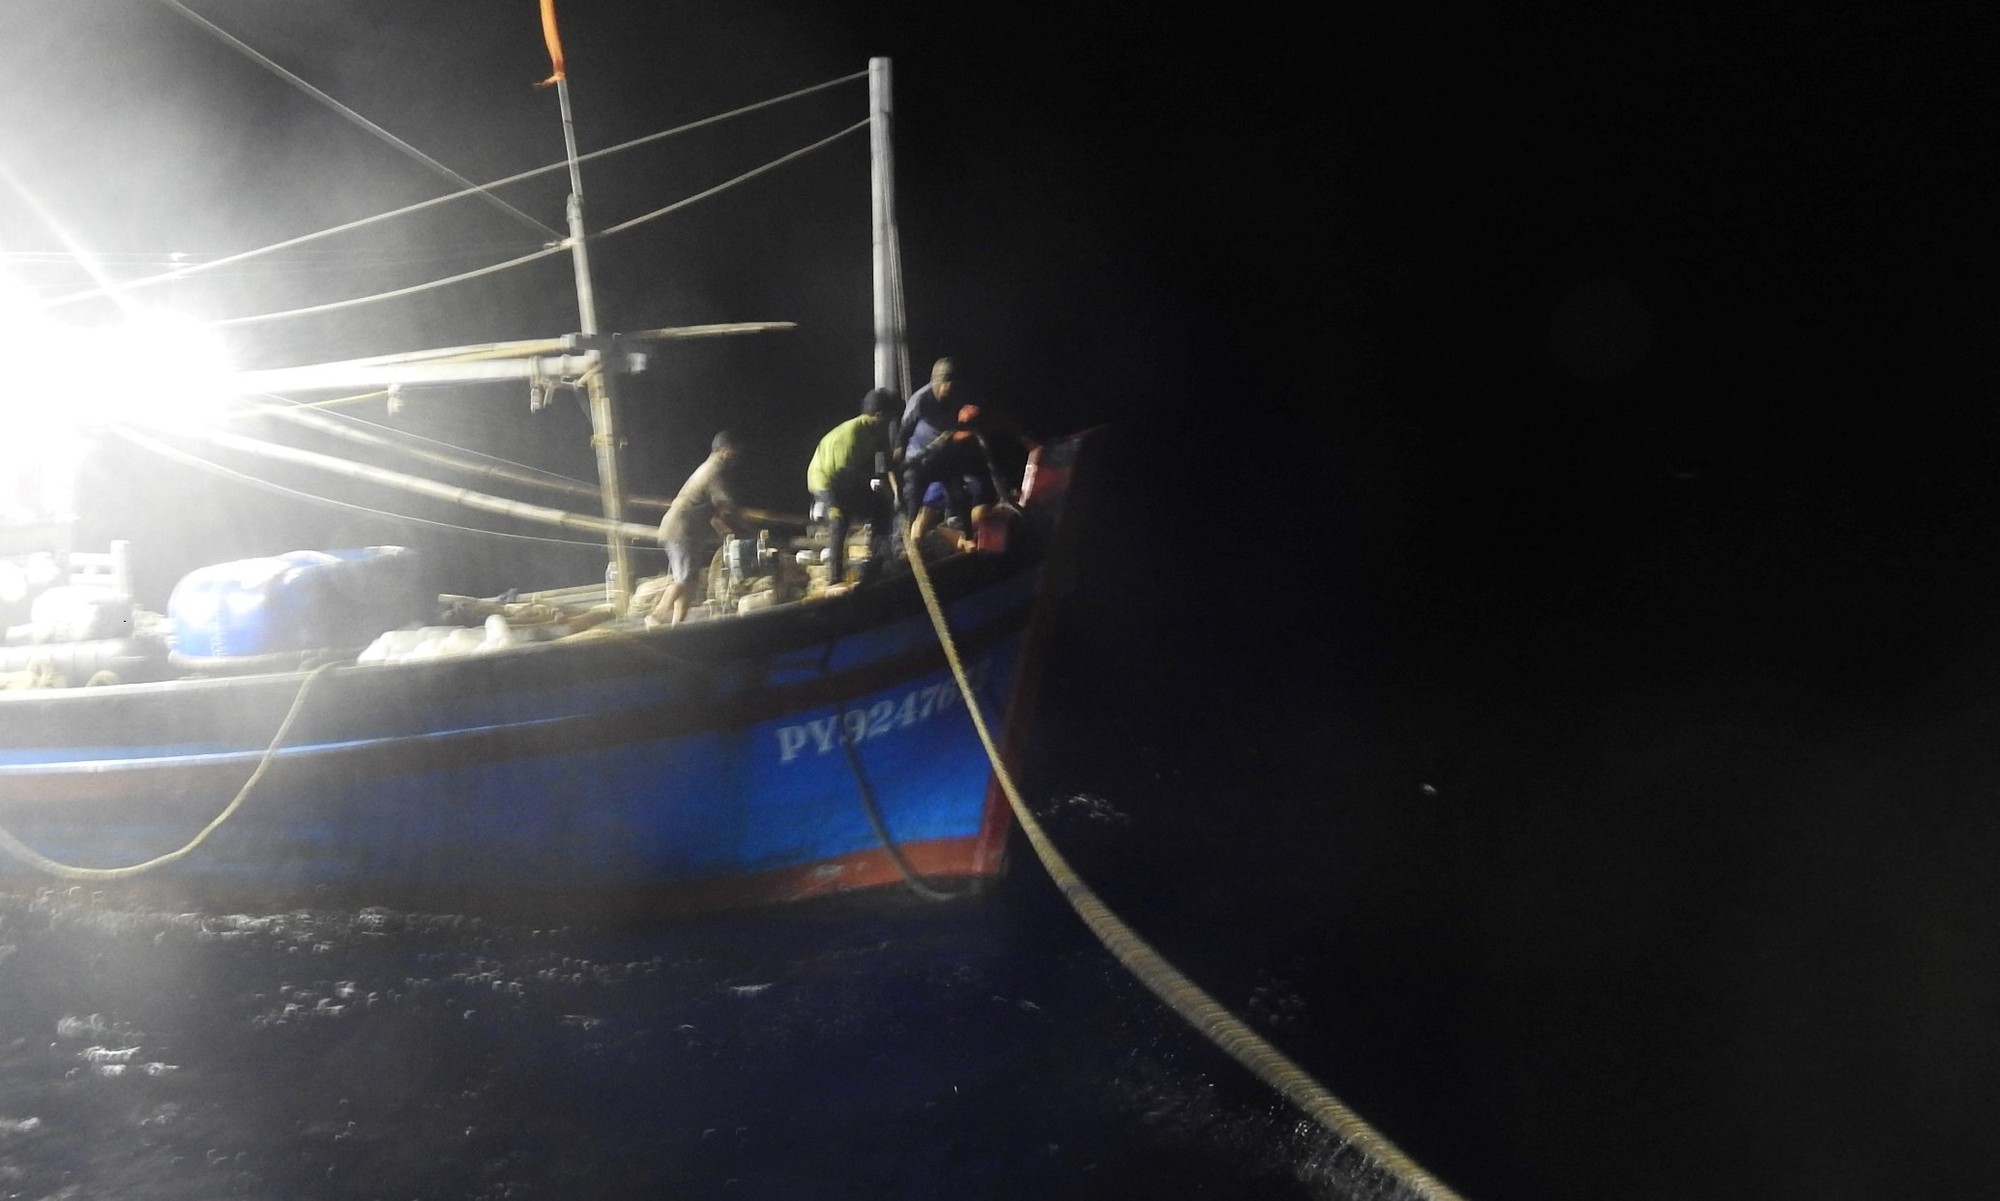 Lai kéo tàu cá Phú Yên bị nạn trên biển về trong đêm - Ảnh 2.